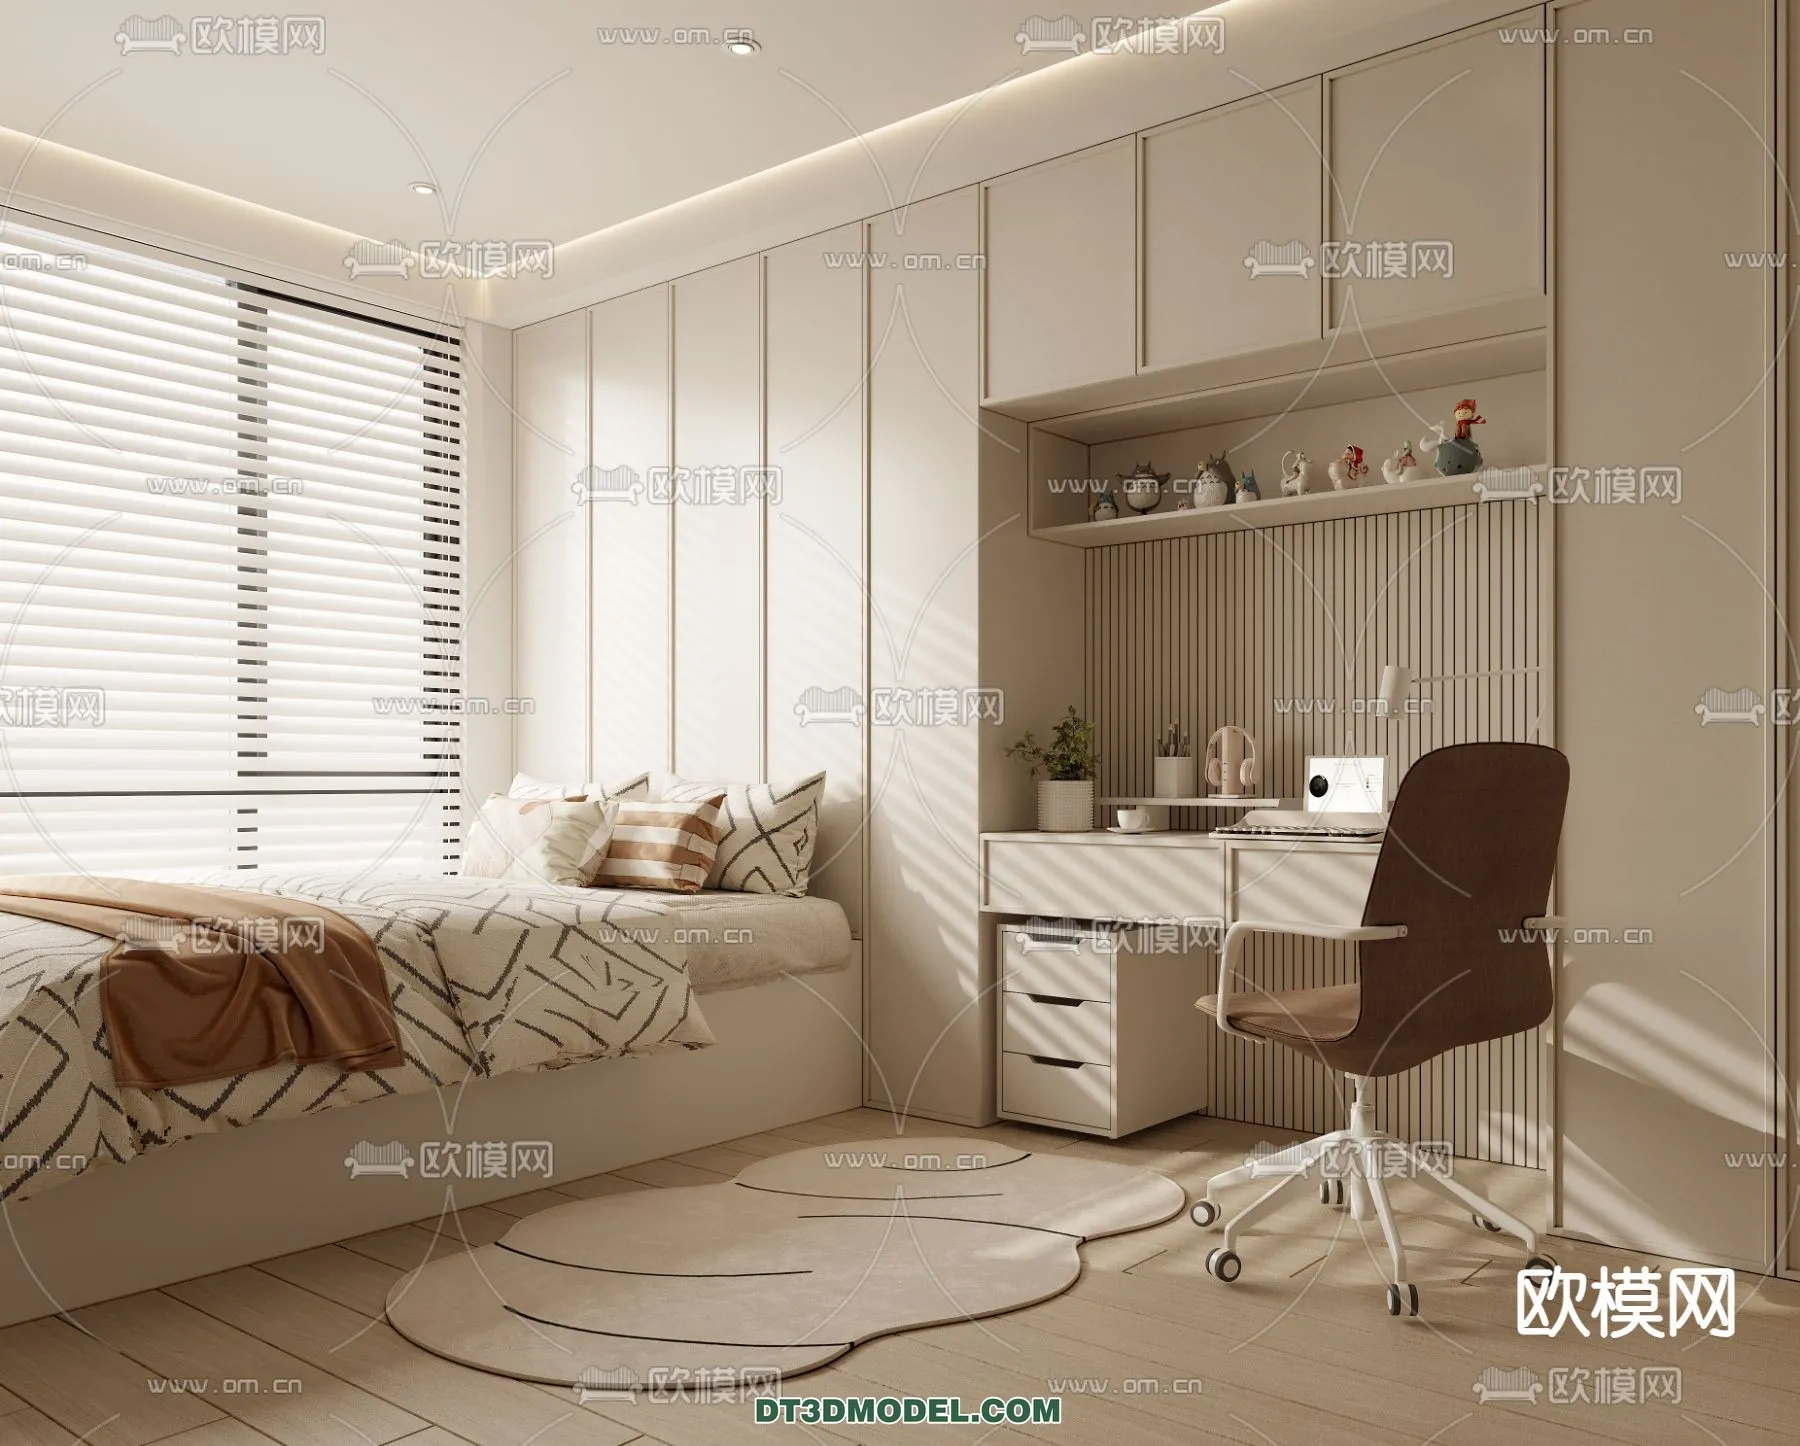 Tatami Bedroom – Japan Bedroom – 3D Scene – 001